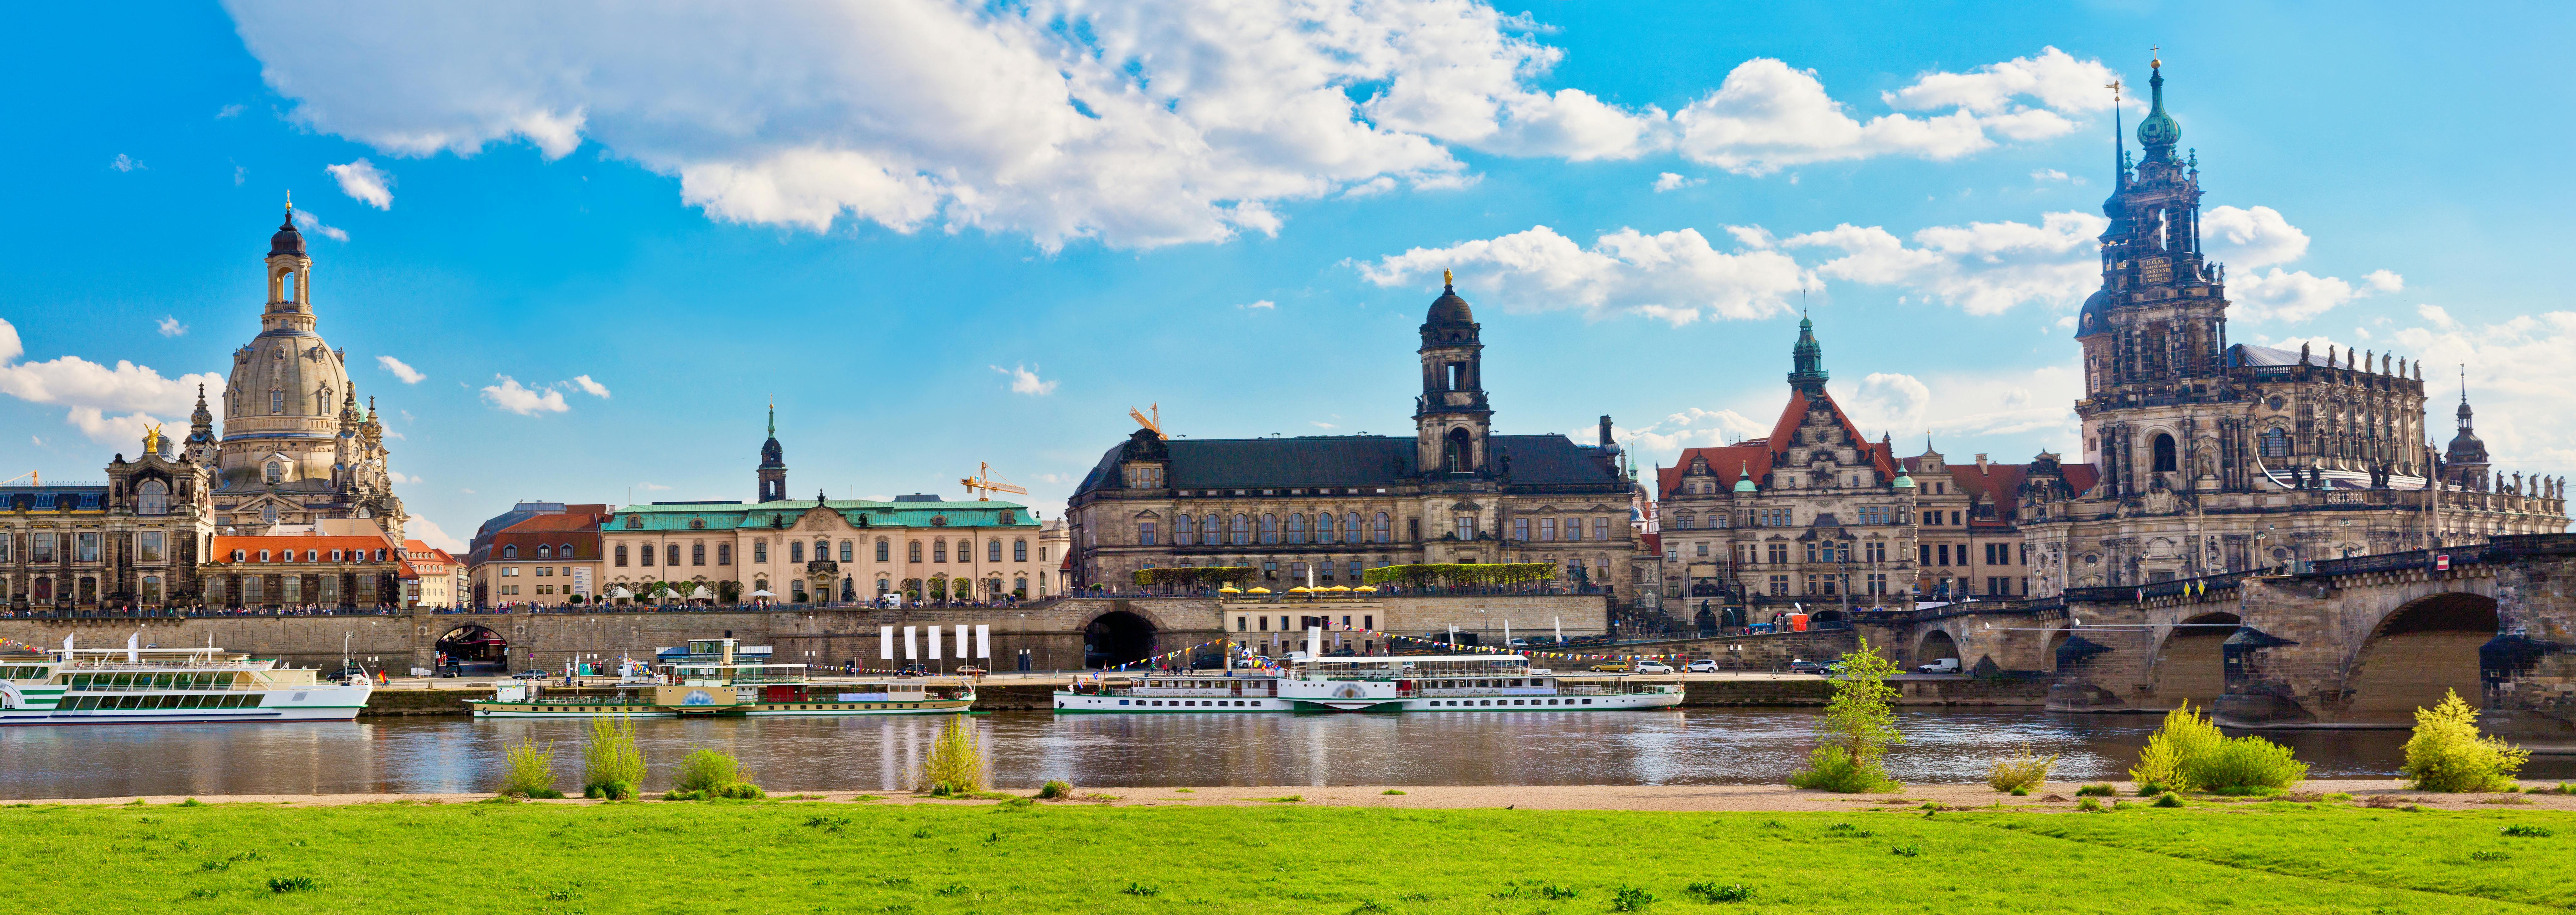 Große Stadtrundfahrt mit Fahrrad durch Dresden